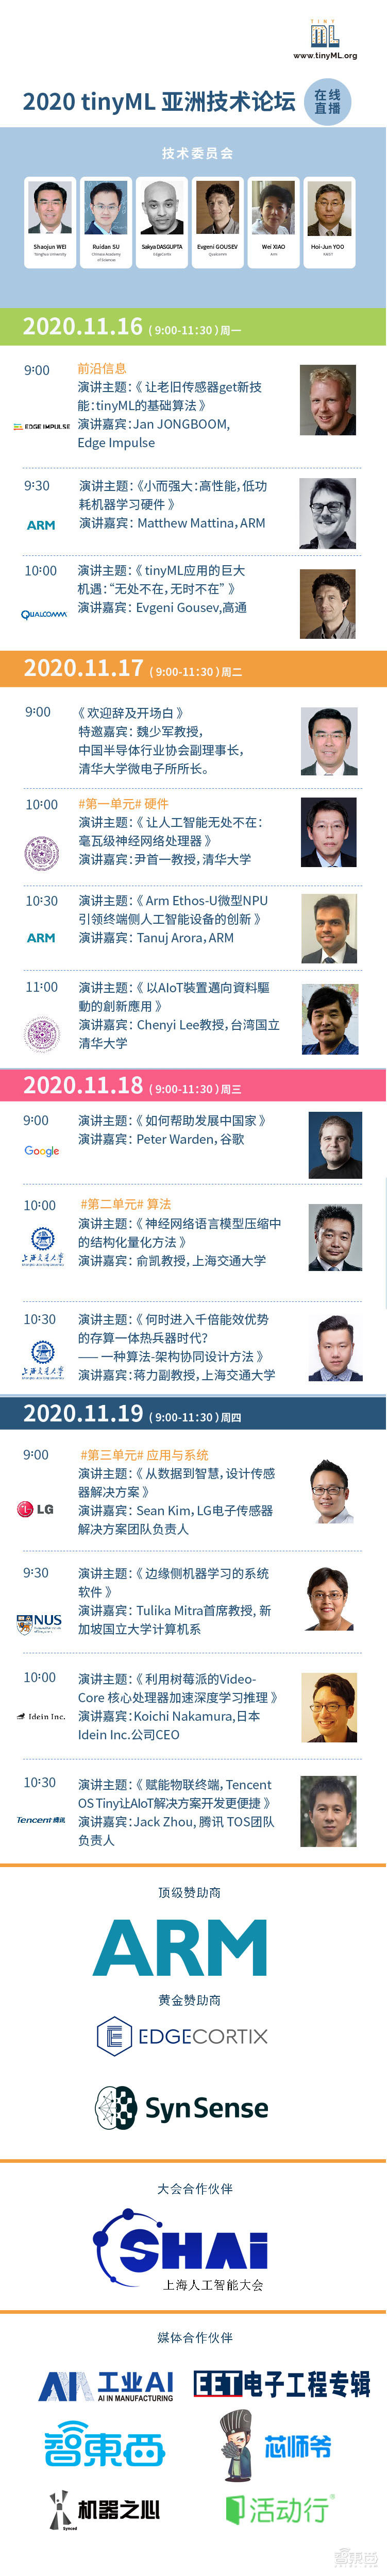 首届tinyML技术论坛（亚洲分论坛）将于11月16日至19日线上直播！